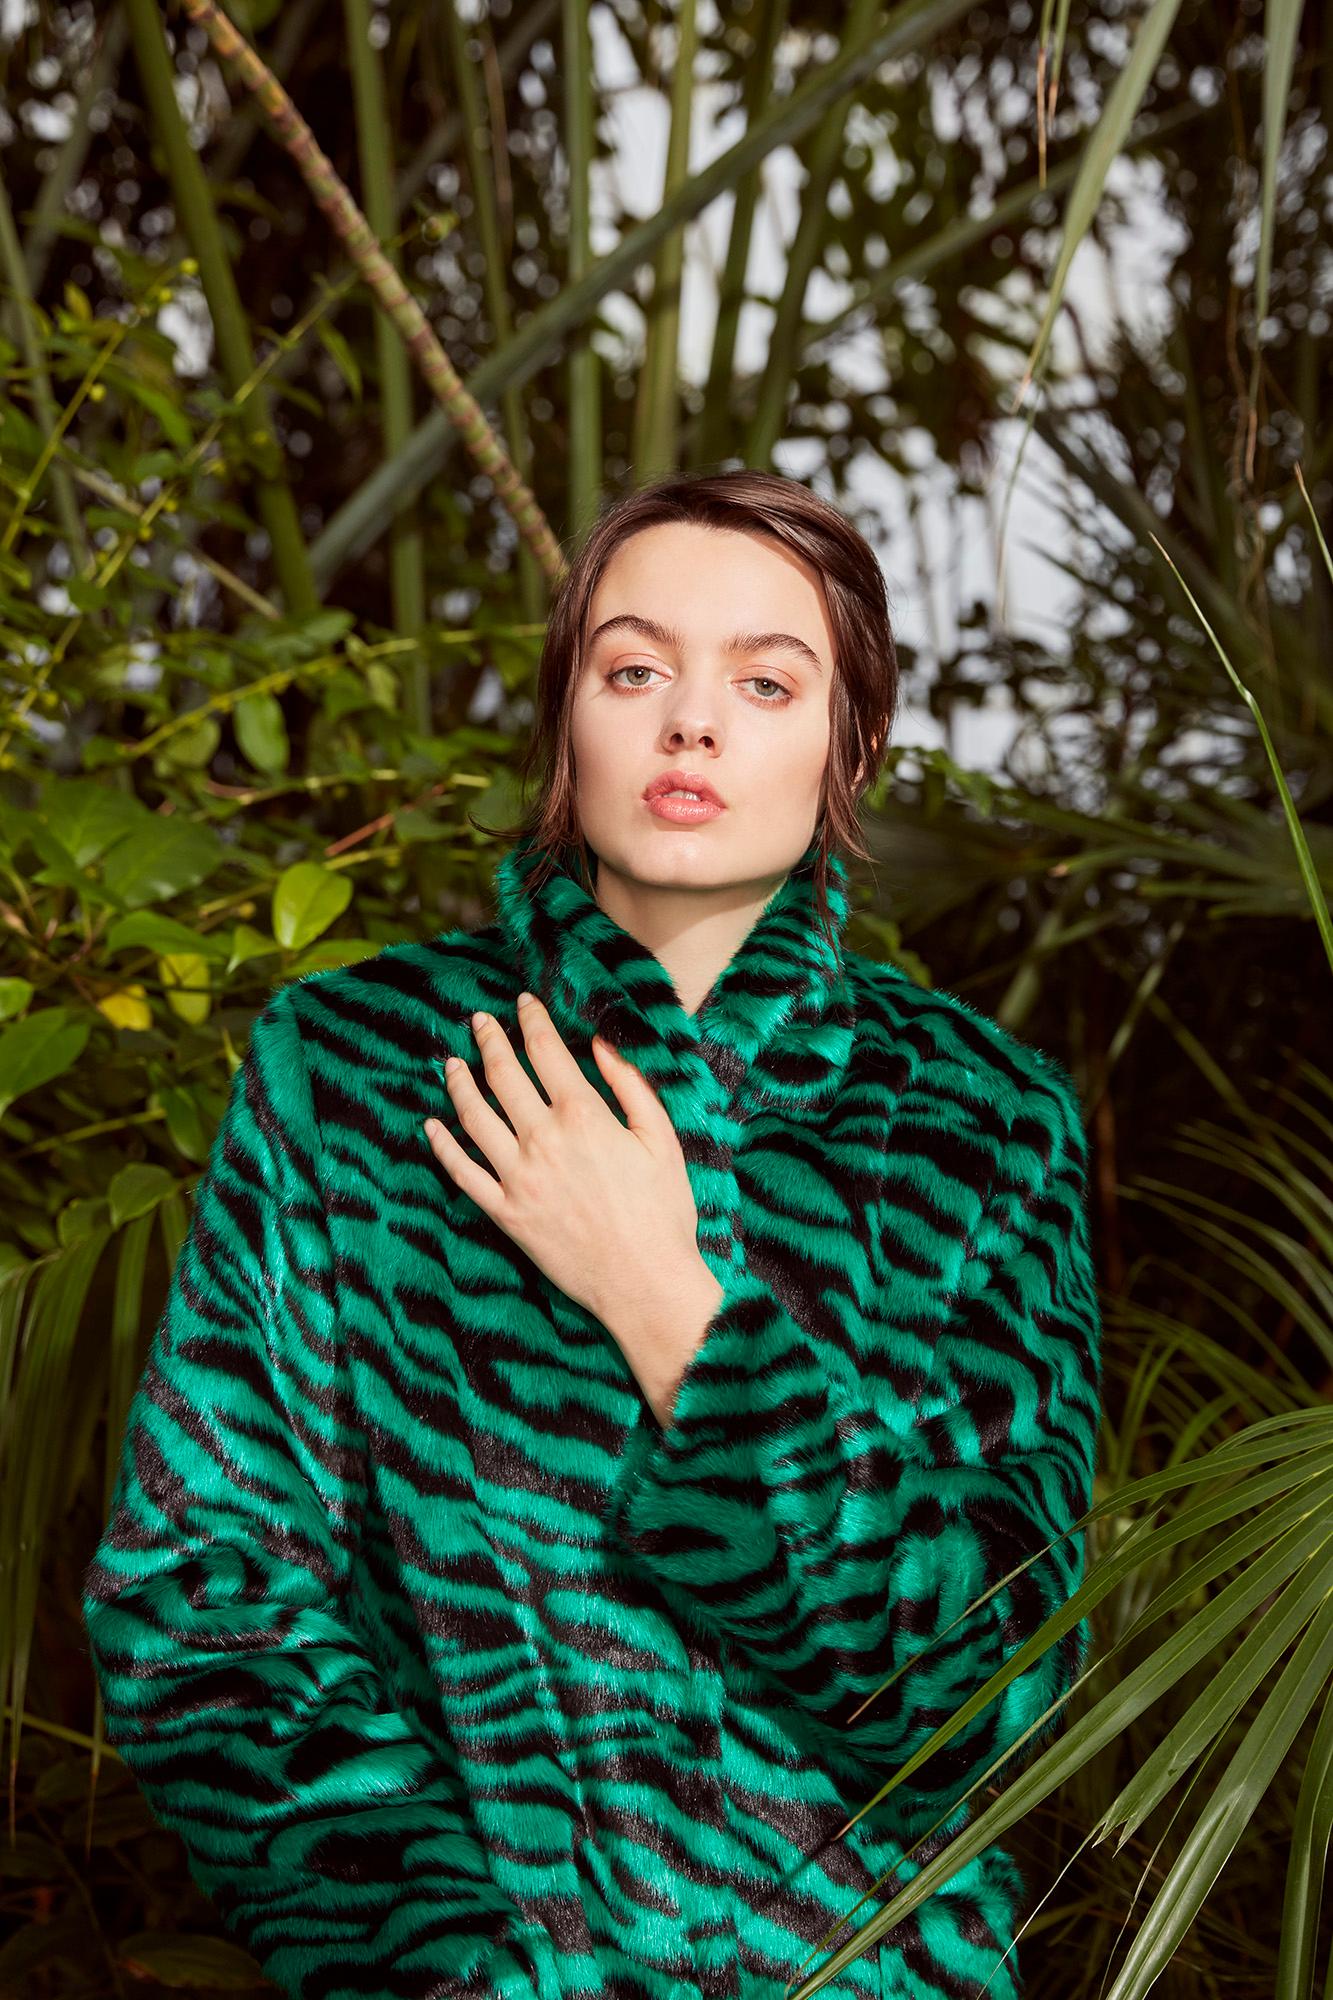 Verheyen London Esmeralda Faux Fur Coat in Emerald Green Zebra Print size uk 14 For Sale 4